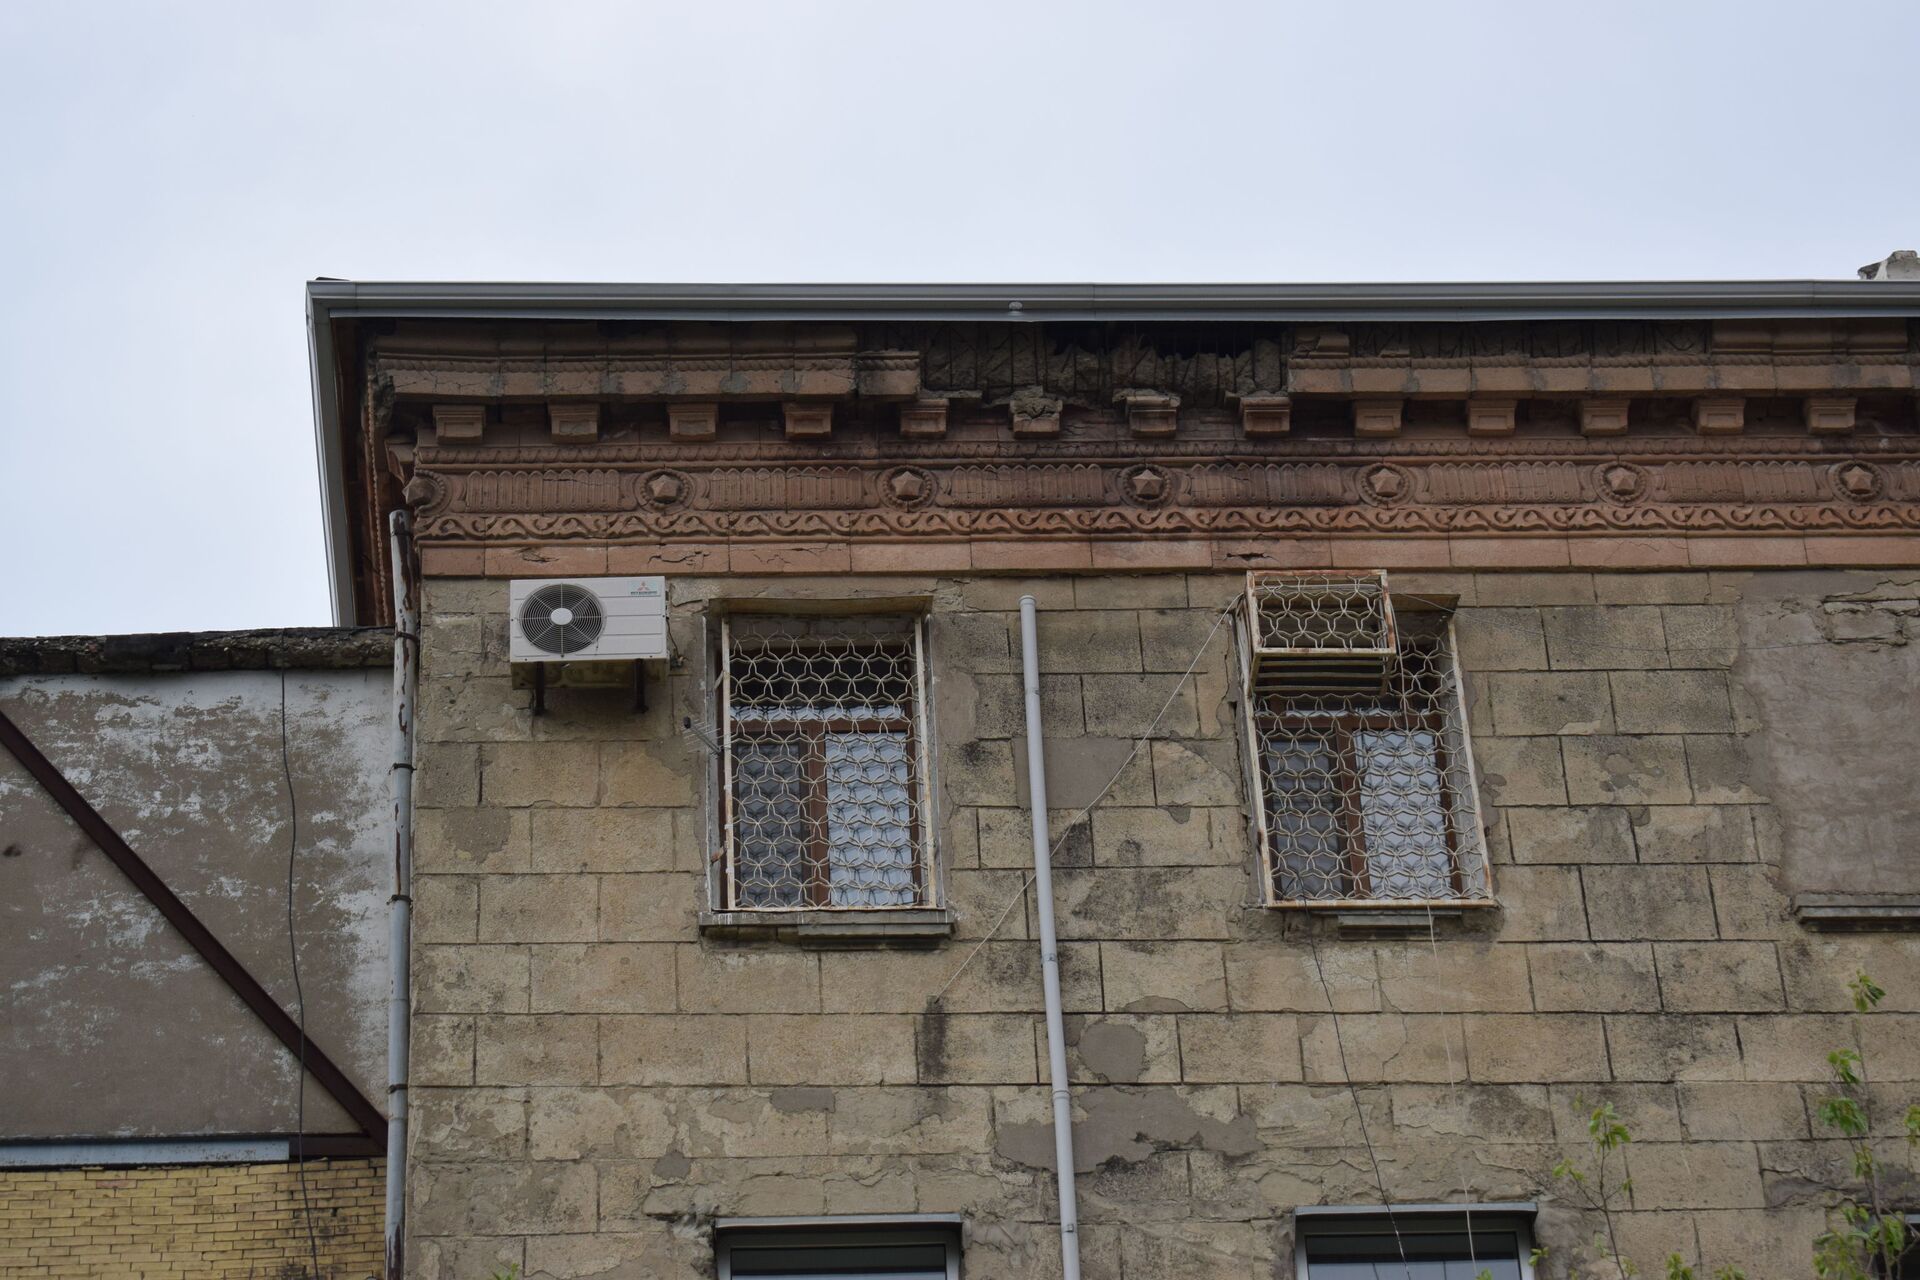 Каменная угроза: облицовки старых домов в Баку могут унести еще не одну жизнь? - Sputnik Азербайджан, 1920, 15.05.2021